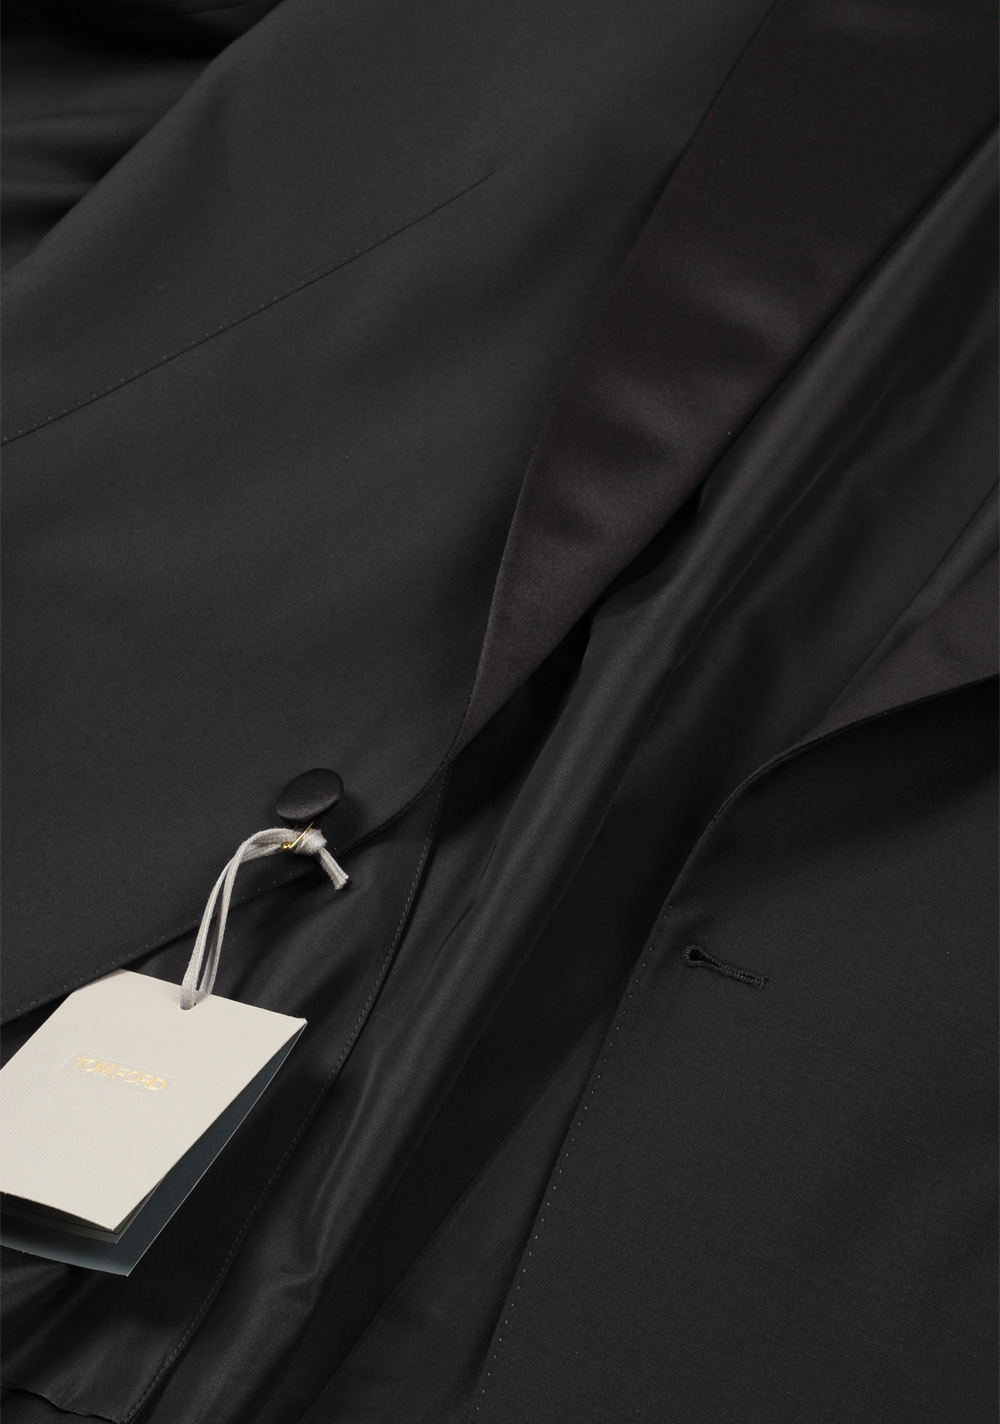 TOM FORD Windsor Black Tuxedo Suit Size 56 / 46R U.S. Fit A | Costume Limité